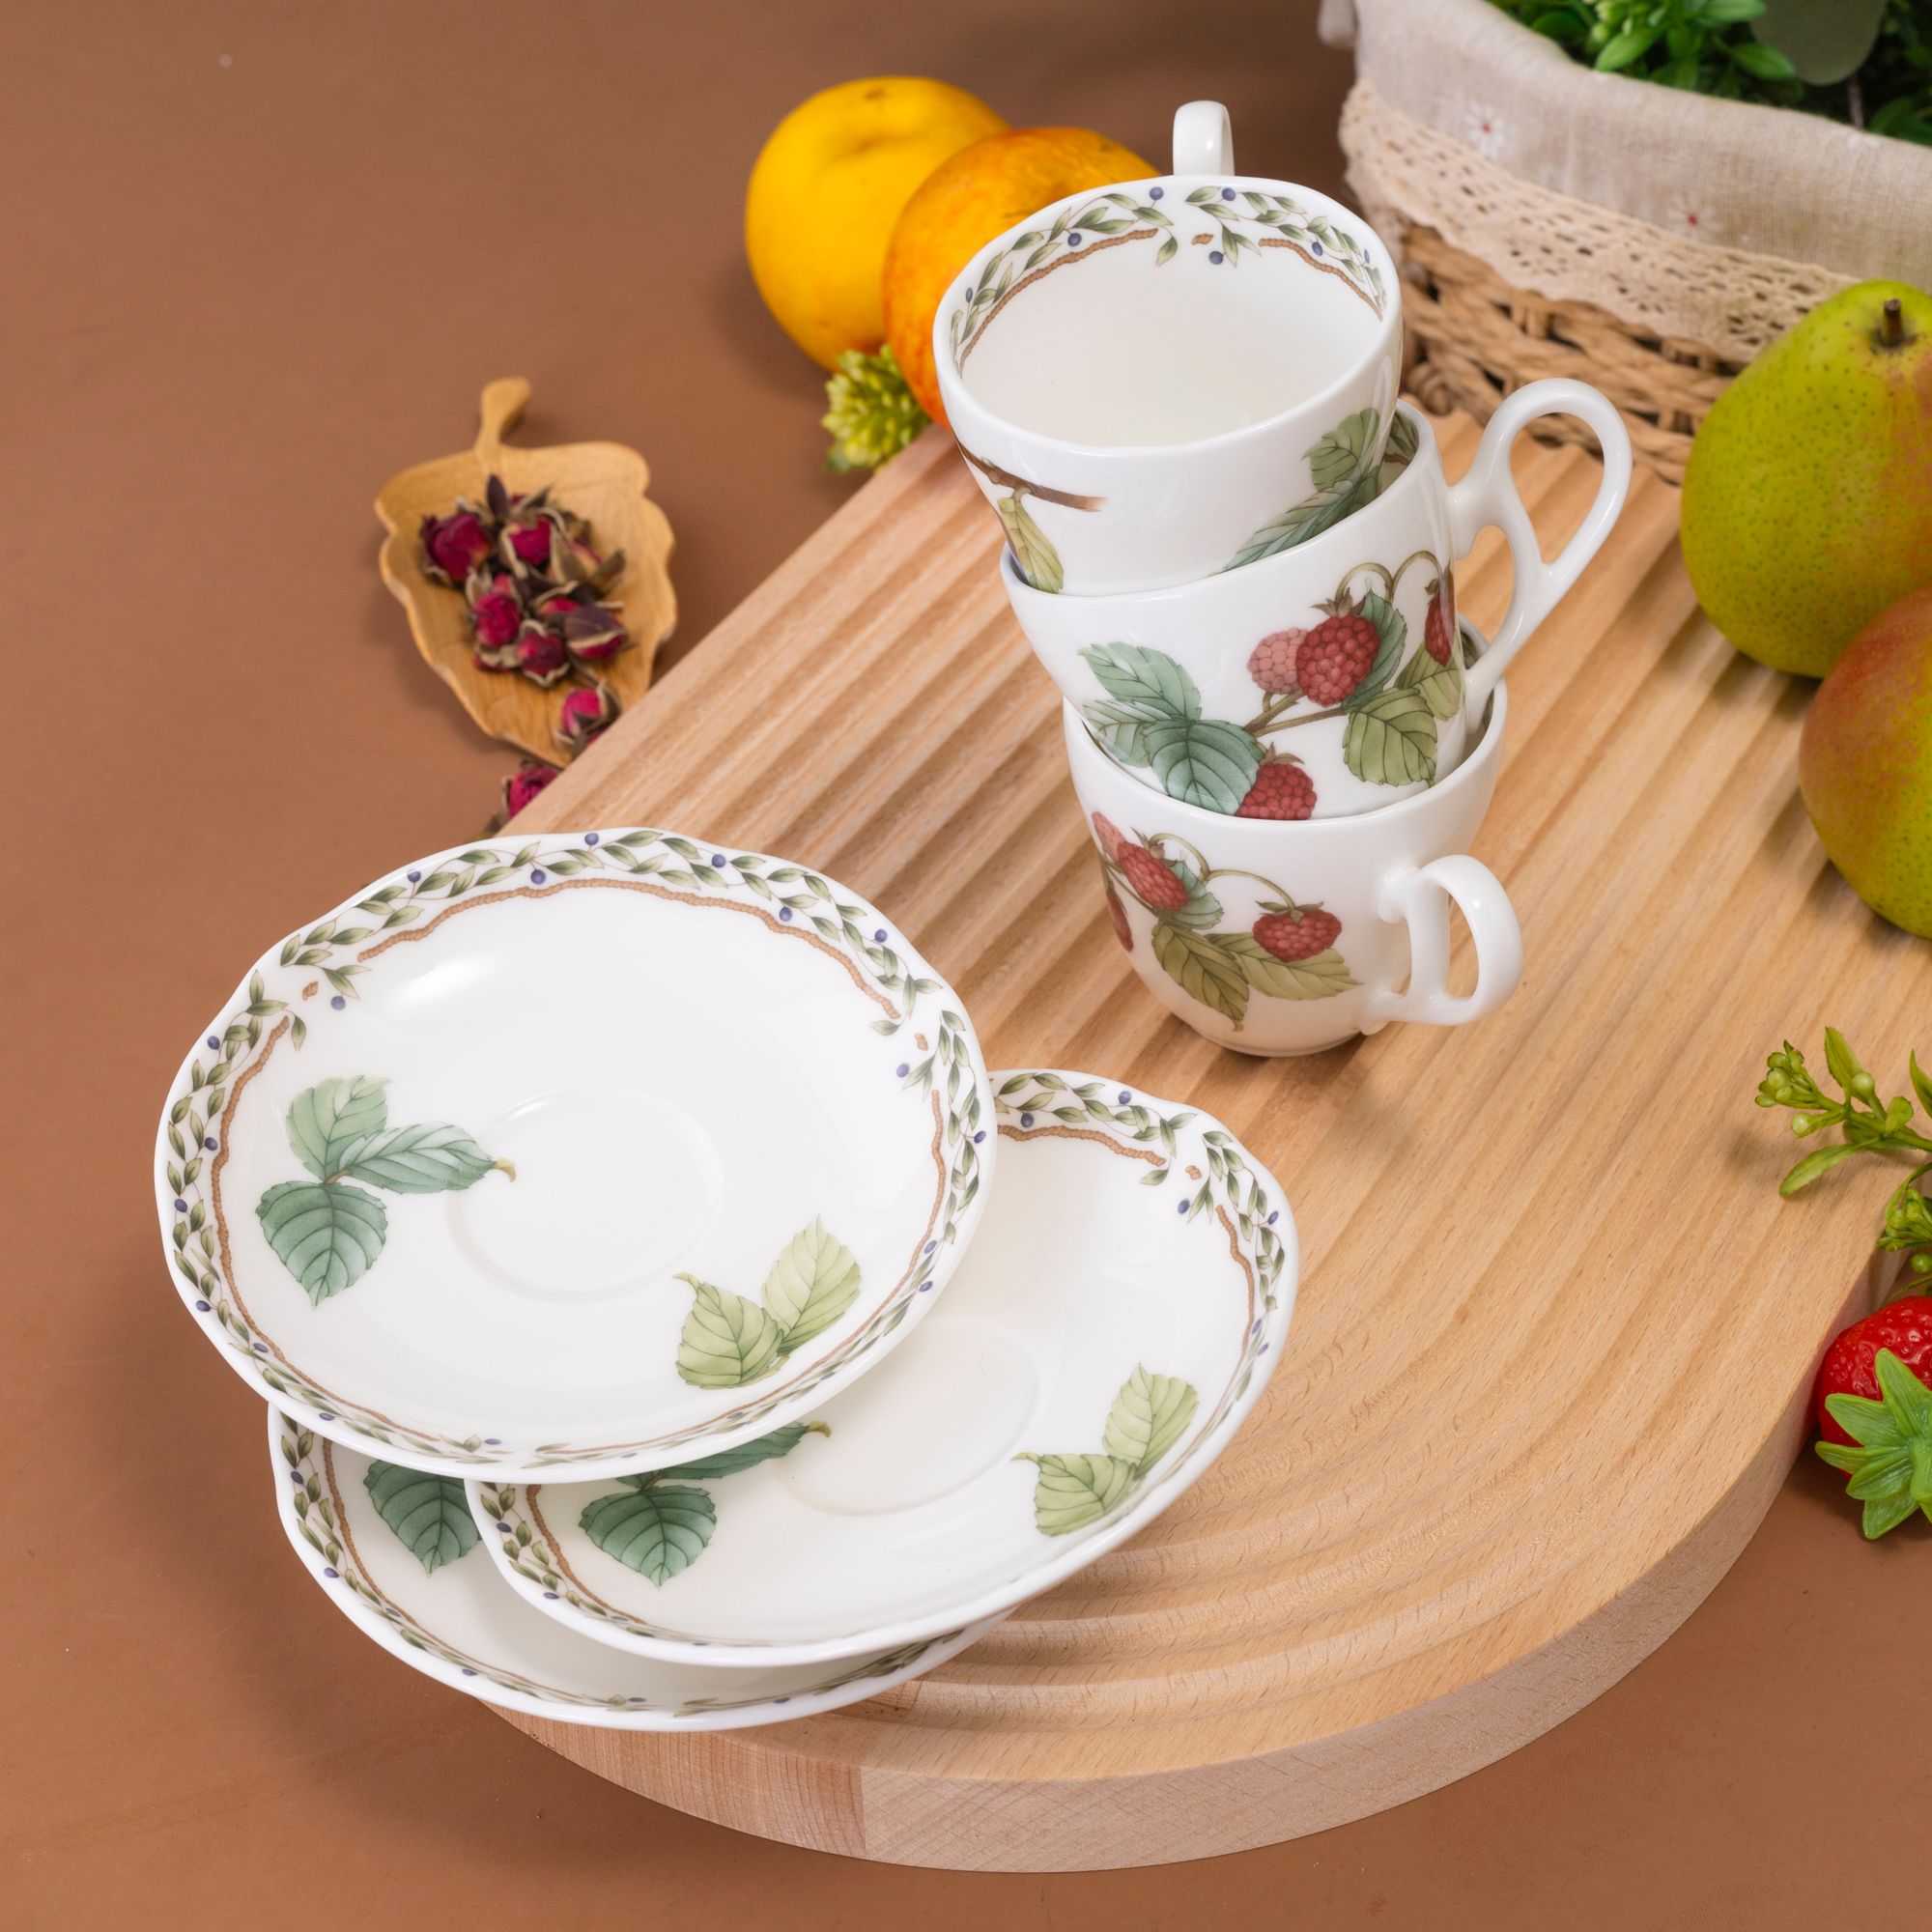  Bộ ấm chén uống trà 13 món (ấm nhỏ 600ml) sứ xương cao cấp | Orchard Garden 4911L-T014S 